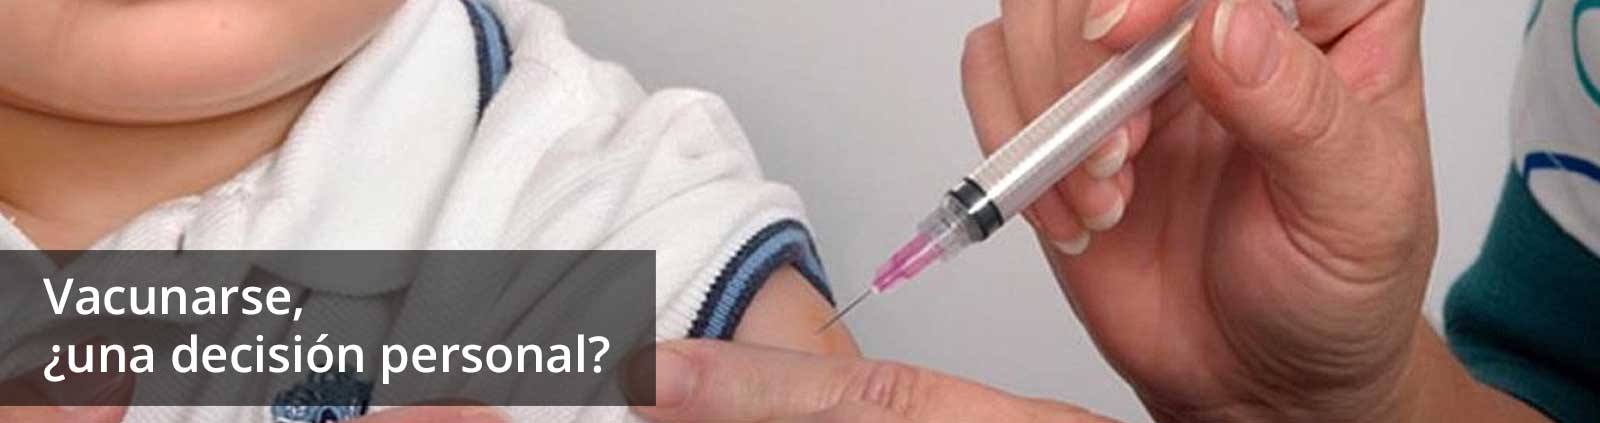 Vacunarse, ¿una decisión personal?